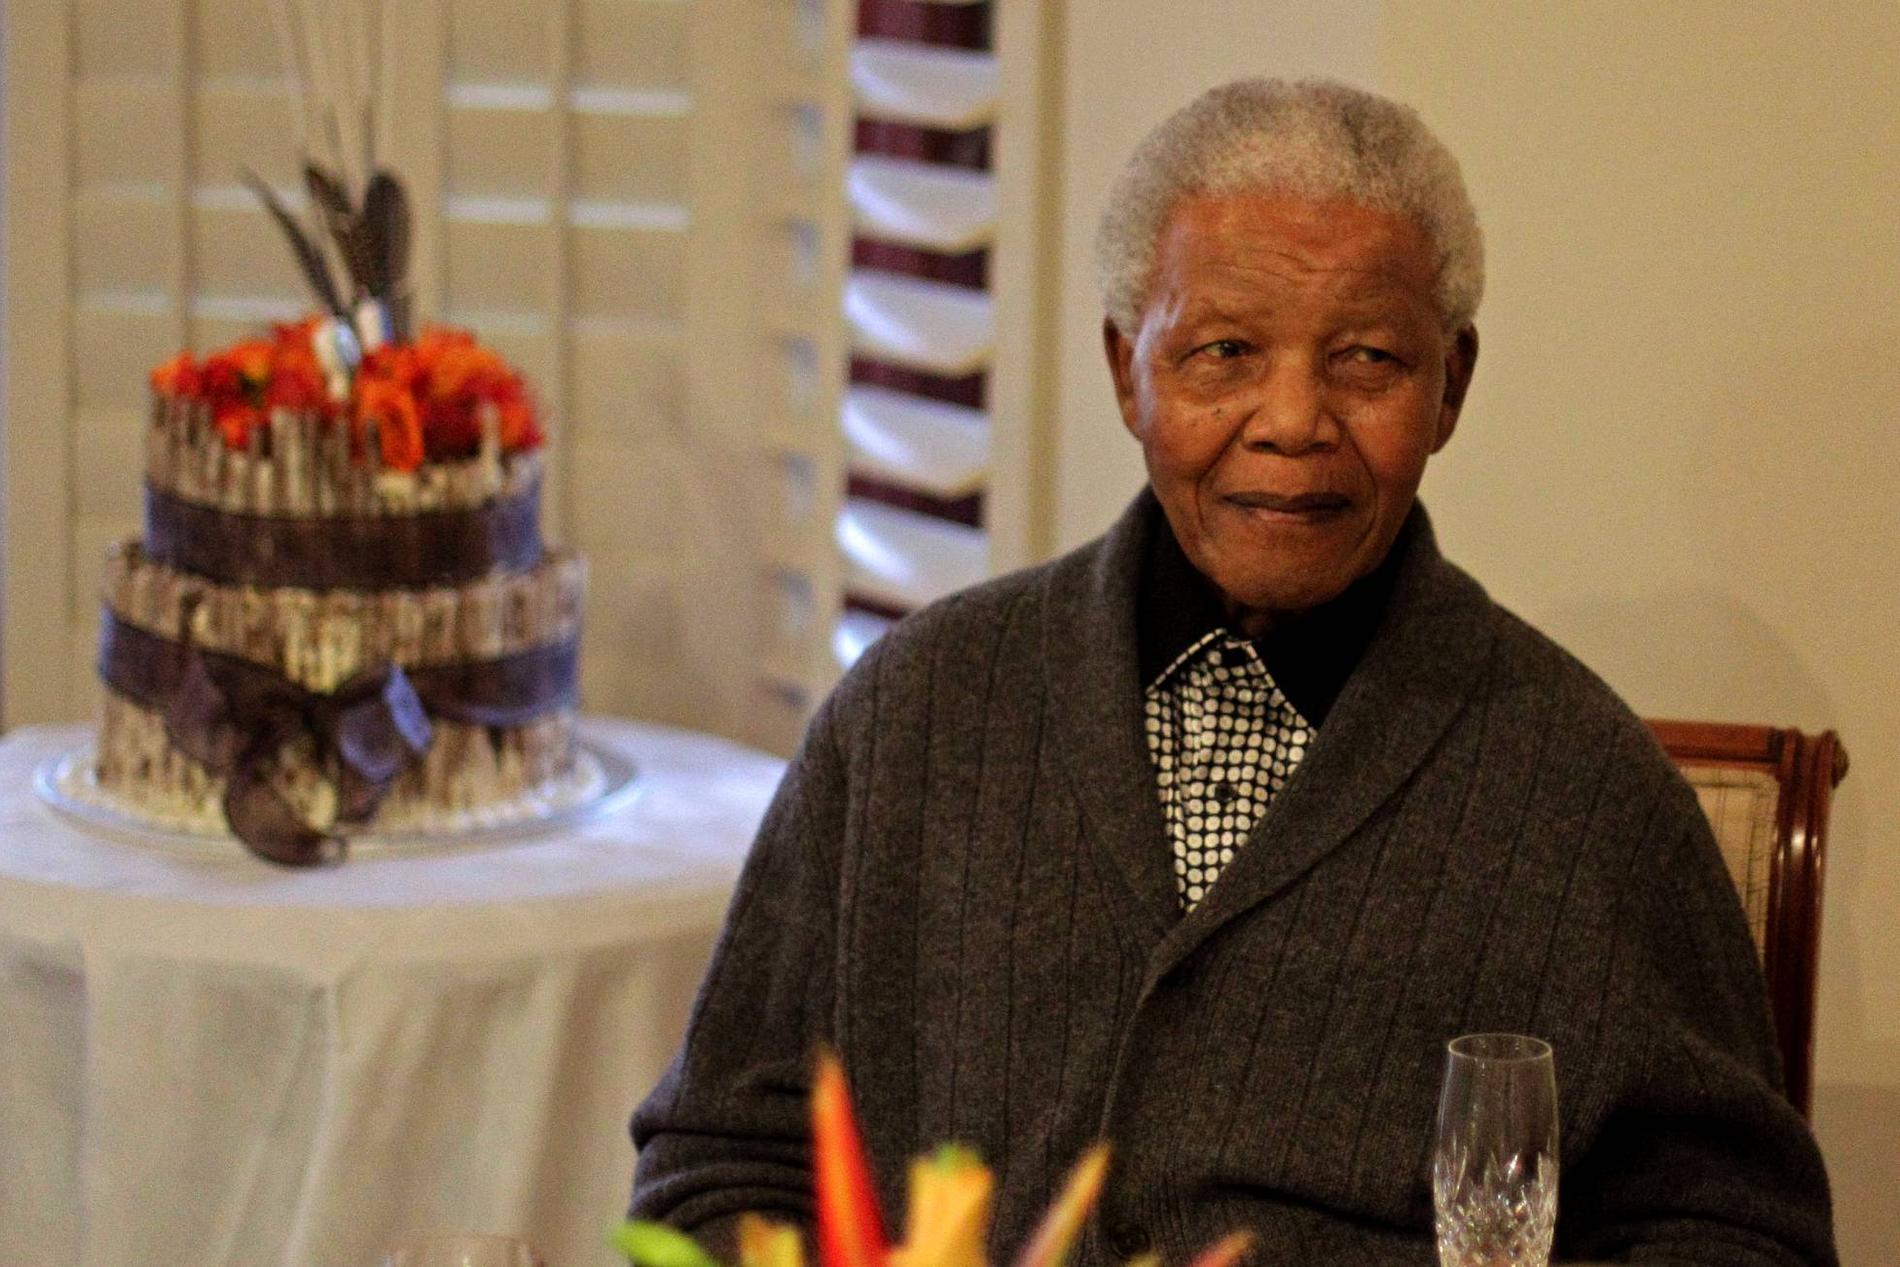 18 juli 2012. Mandela firar sin 94:e födelsedag tillsammans med sin familj i hemmet i Qunu, Sydafrika.